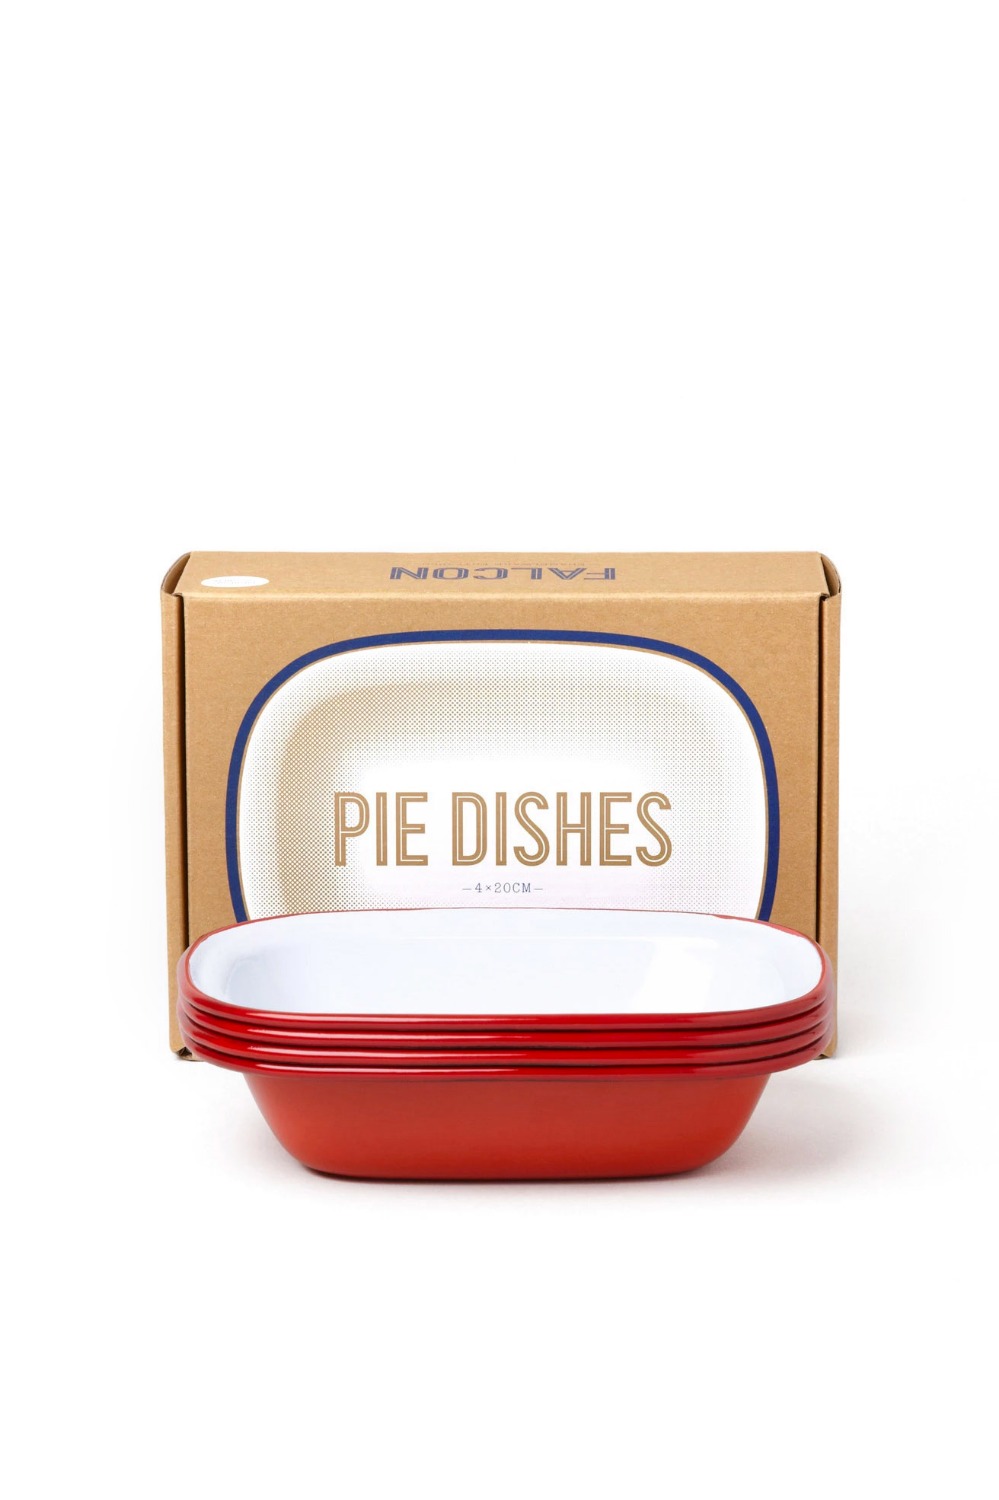 FALCON(팔콘) Pie Dishes - red